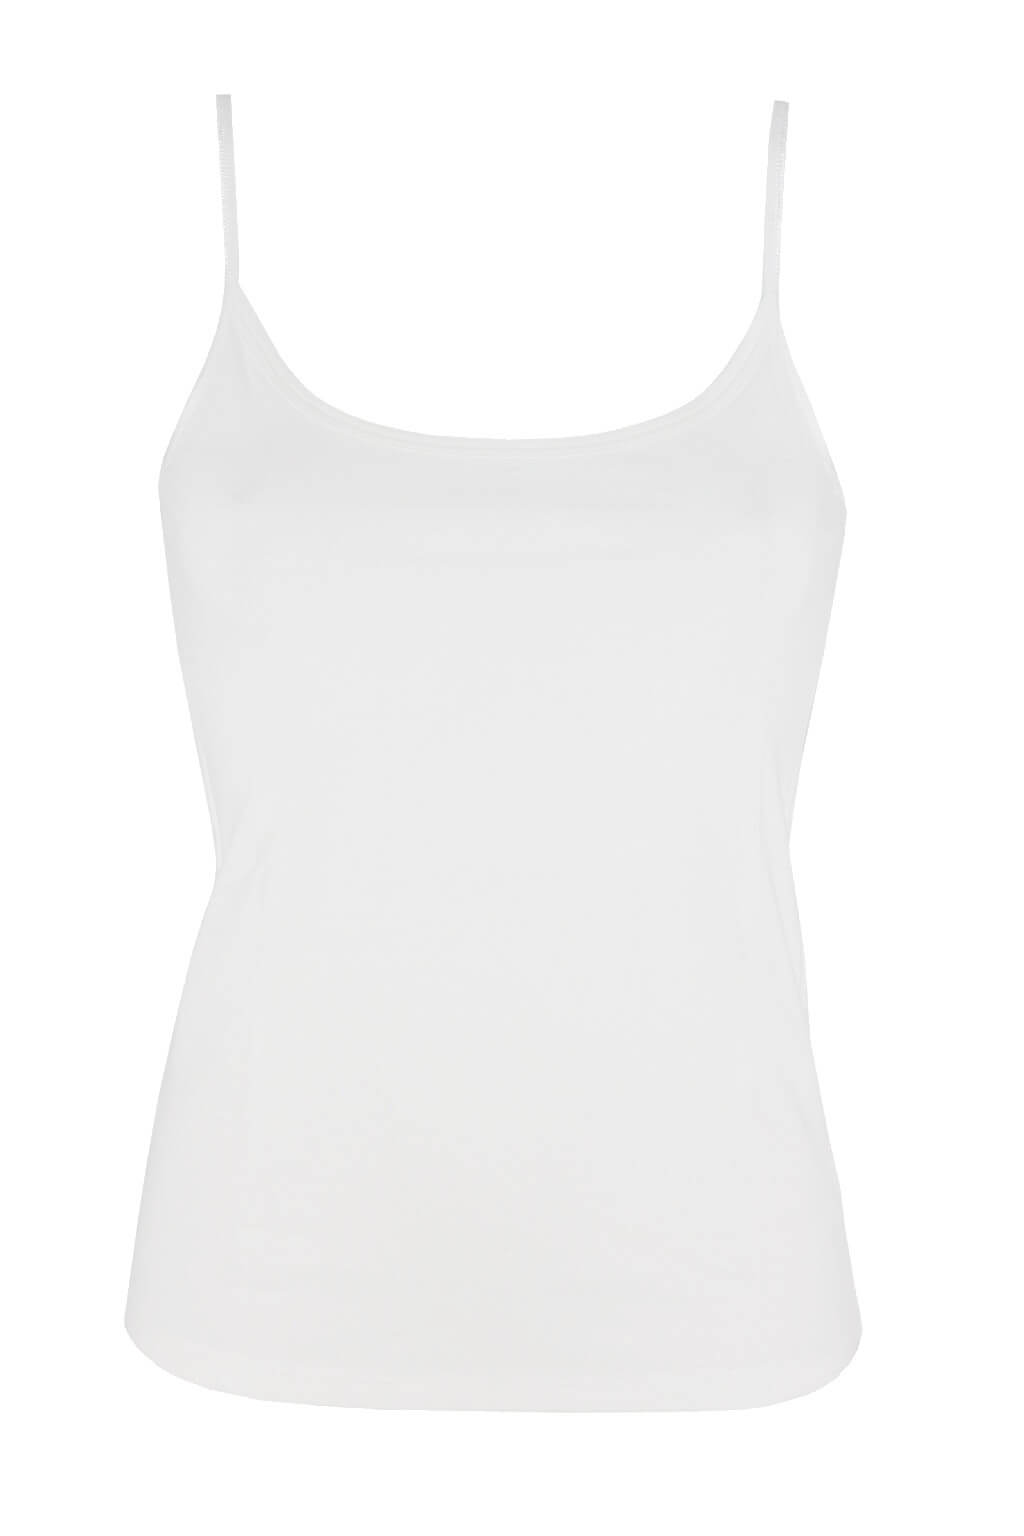 Bellinda Blanco bavlněná spodní košilka 818104 S bílá